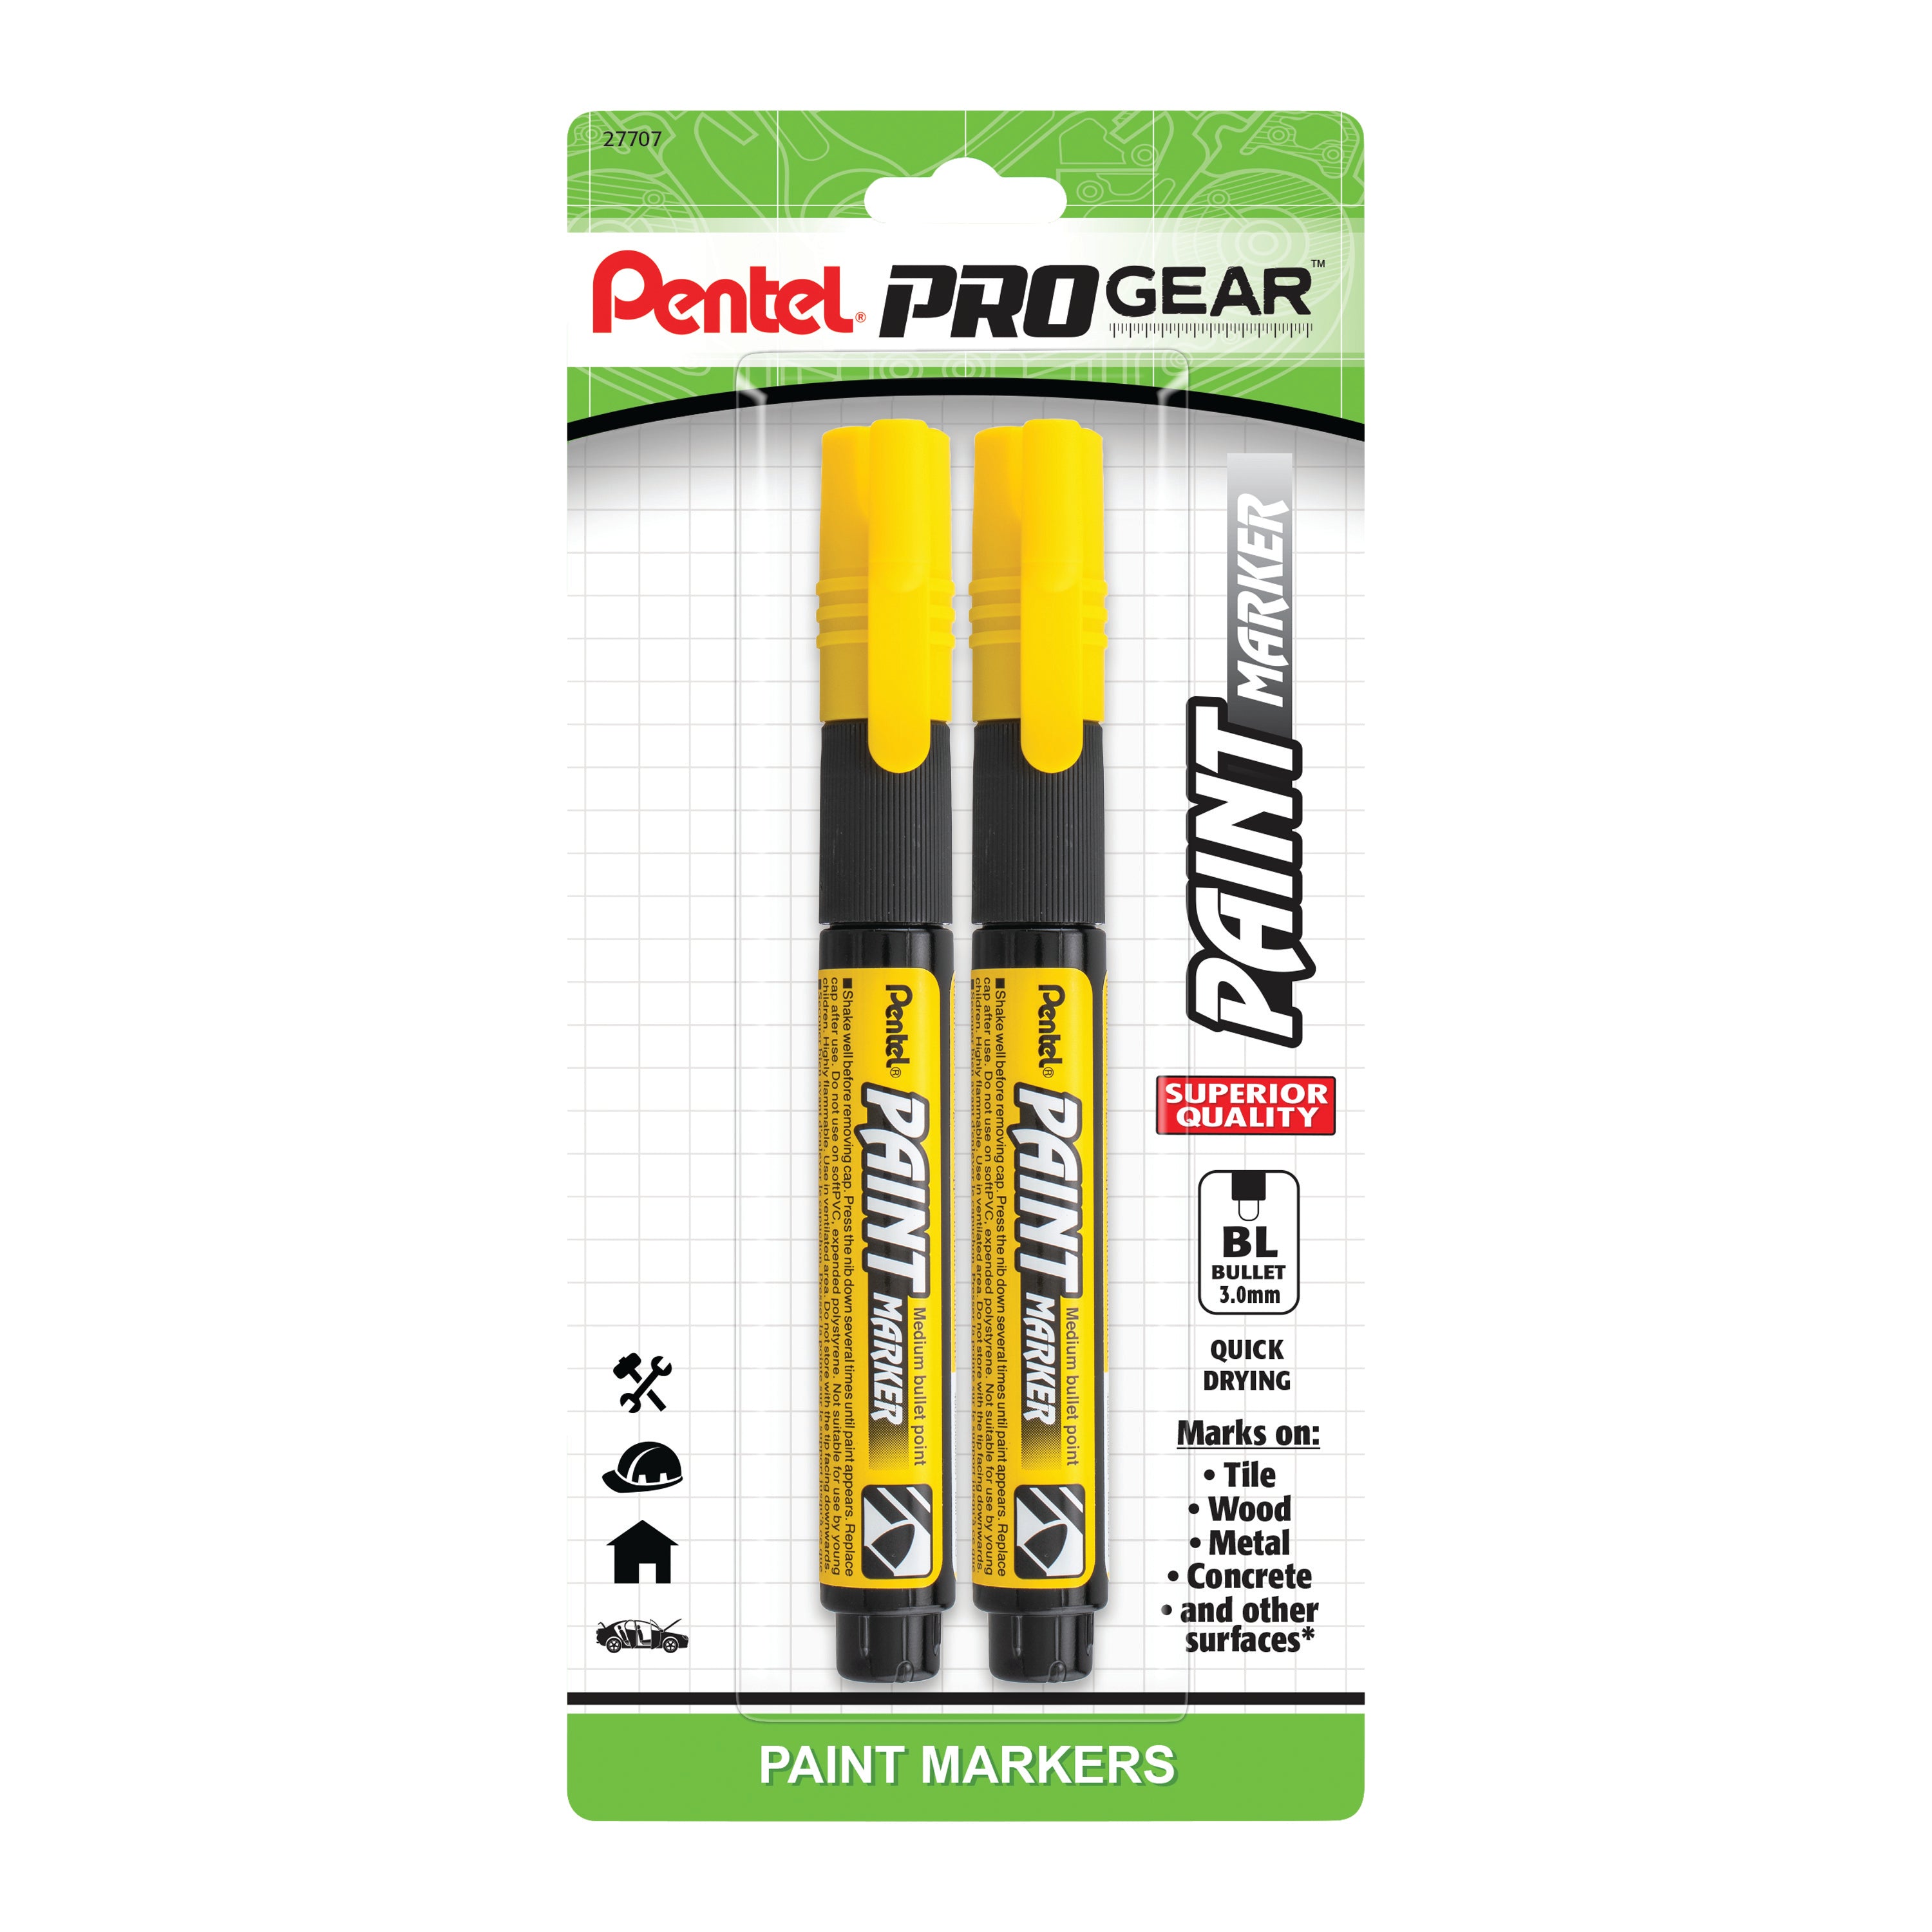 Pentel ProGear Paint Marker, Yellow Ink, 2-pks – Pentel of America